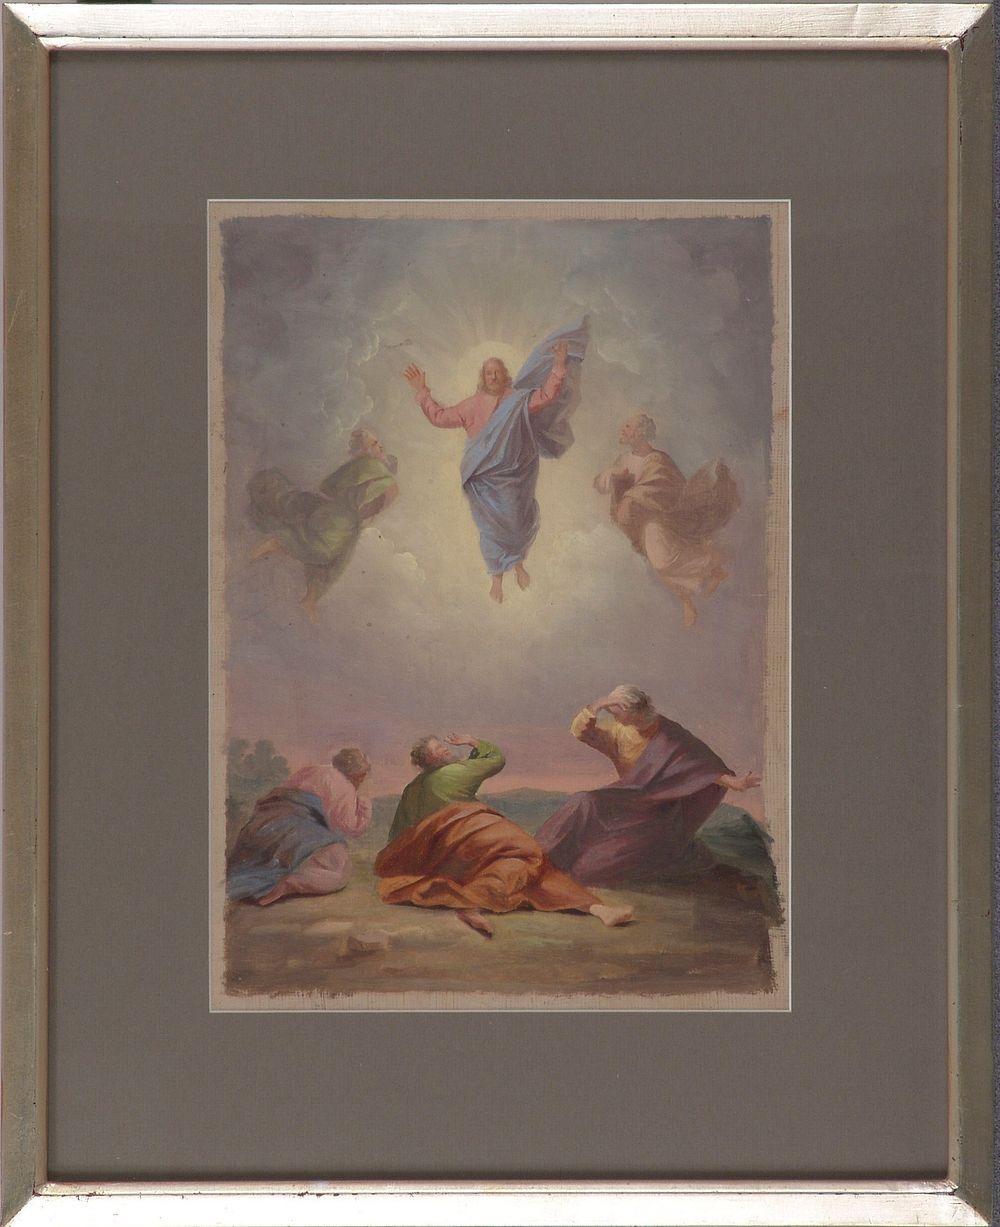 Kristuksen kirkastus, sortavalan kirkon alttaritaulun luonnos, 1859, Berndt Abraham Godenhjelm